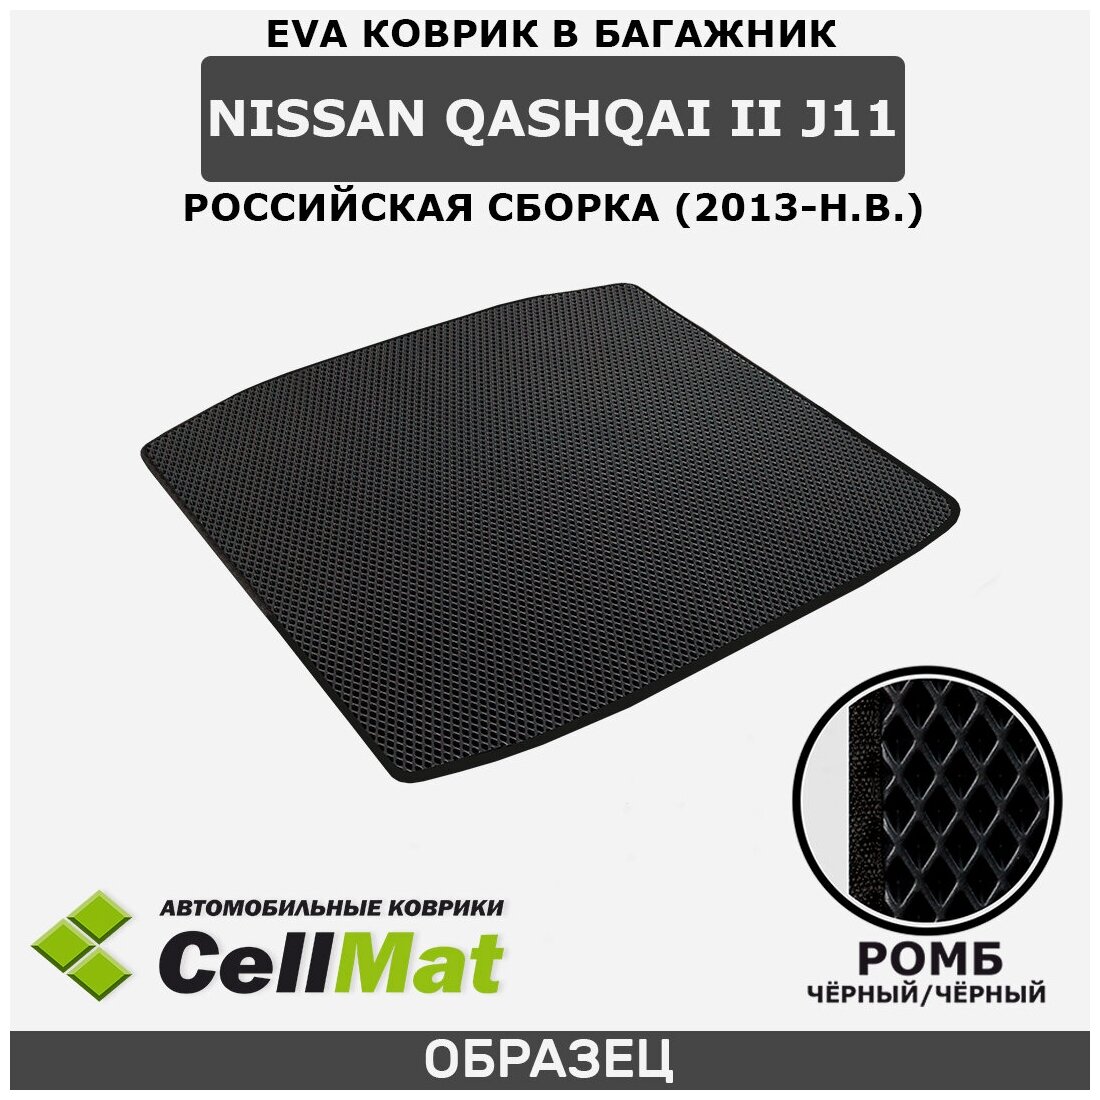 ЭВА ЕВА EVA коврик CellMat в багажник Nissan Qashqai II J11 RUS (российская сборка), Ниссан Кашкай, 2-ое поколение, 2013-н. в.